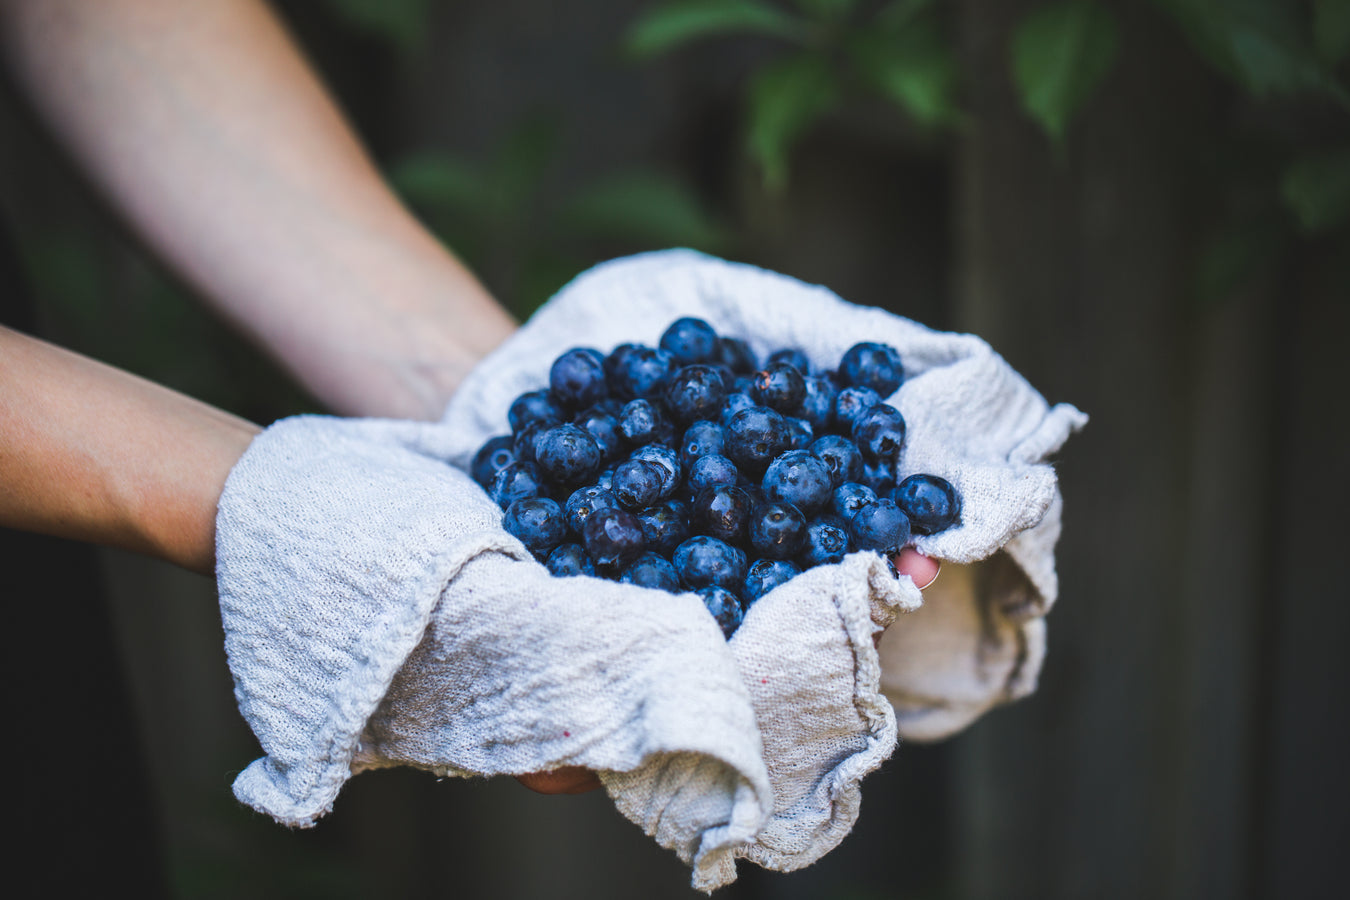 Hvordan dyrkes blåbær? Find blåbærsorter. Vi vil samle alle almindelige danske blåbærsorter, som det er muligt at dyrke i Danmark. Samt indsamle information og vejledninger til dyrkning af blåbær. Der er stor forskel på blåbærplanter.